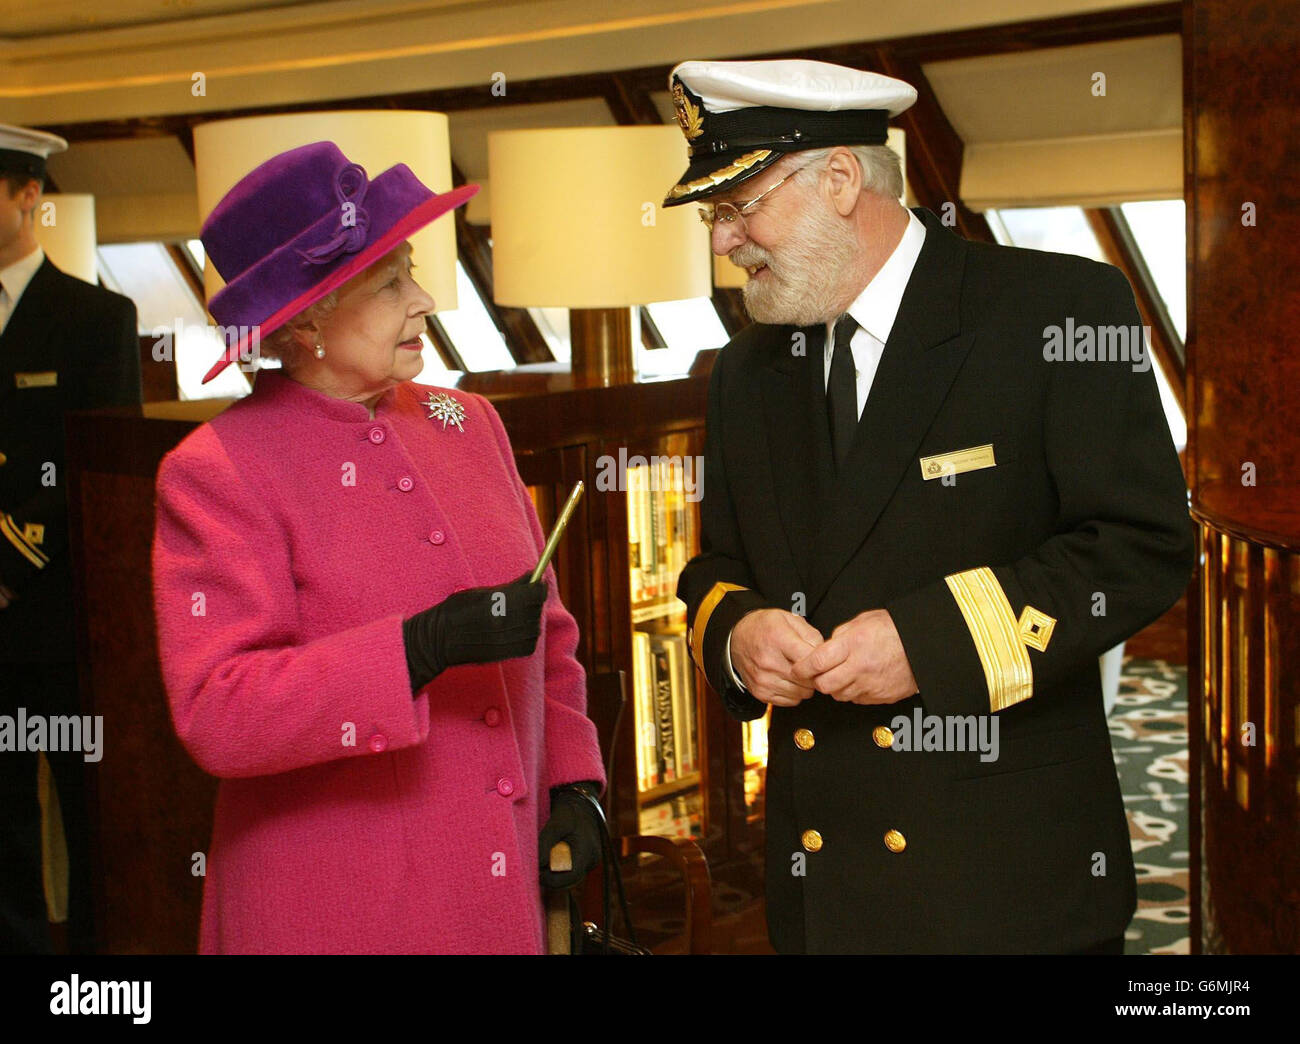 La reine Elizabeth II tient un stylo fait d'une partie d'une hélice sur le navire original de la reine Elizabeth, alors qu'elle parle au Commandor Ronald Warwick sur le pont du paquebot de croisière de la reine Mary 2 à Southampton Docks,avant de nommer le navire de 550 millions devant plus de 2,000 invités.C'était la première fois que la Reine nomma un navire Cunard depuis le lancement en 1967 du QE2, dont le service de Southampton à New York sera repris par le QM2 de 2,620 passagers en avril. Banque D'Images